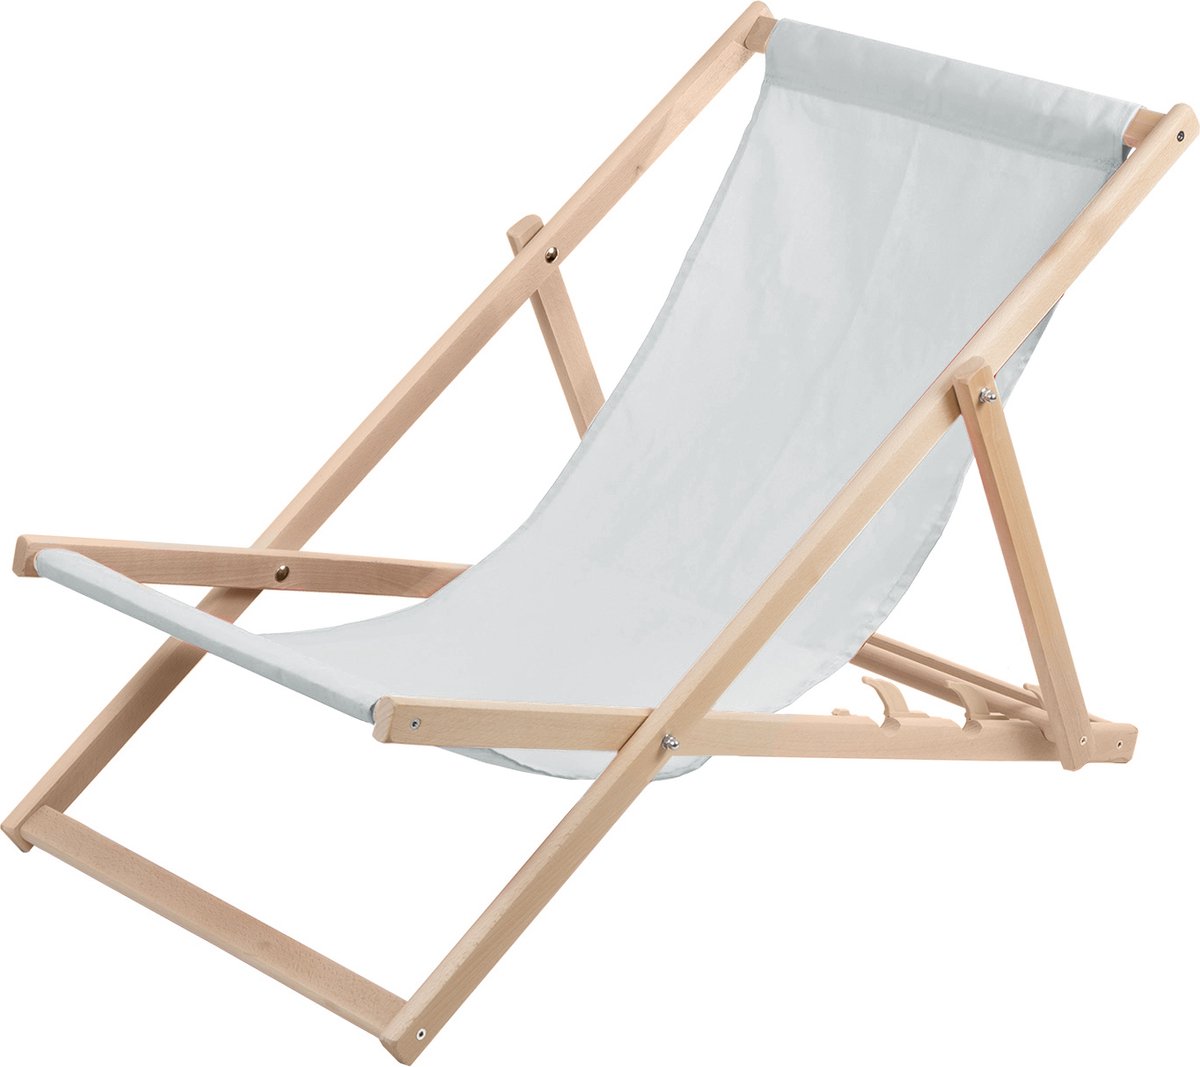 WOODOK - Ligstoel - Comfortabele houten ligstoel in wit ideaal voor het strand, balkon, terras